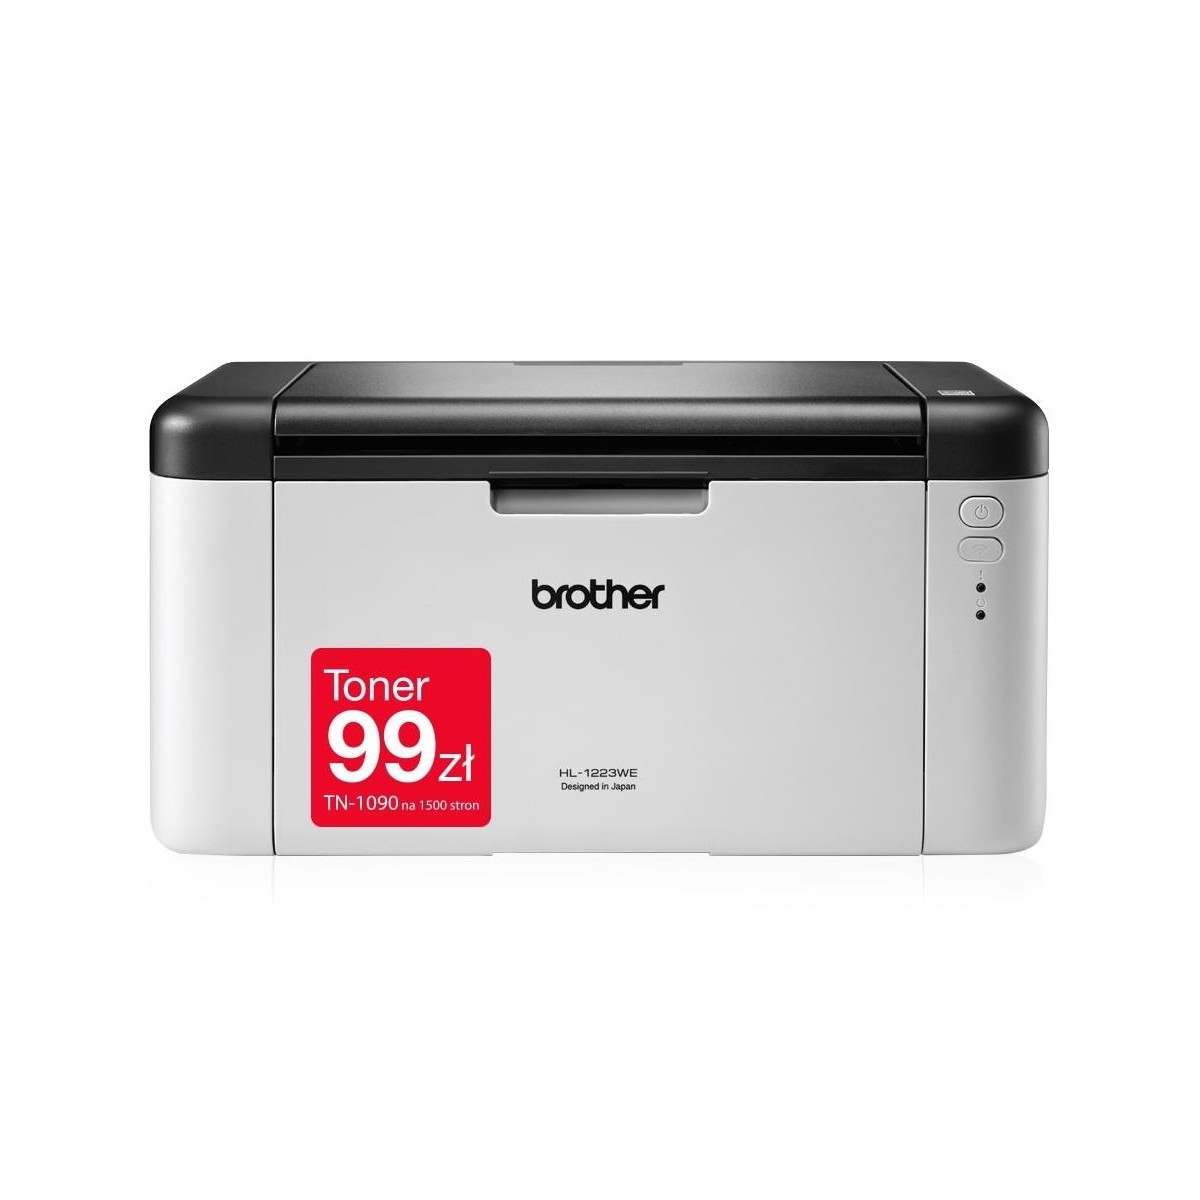 Brother HL-1223WE 2400 x 600 DPI A4 Wi-Fi - Printer - Laser-Led